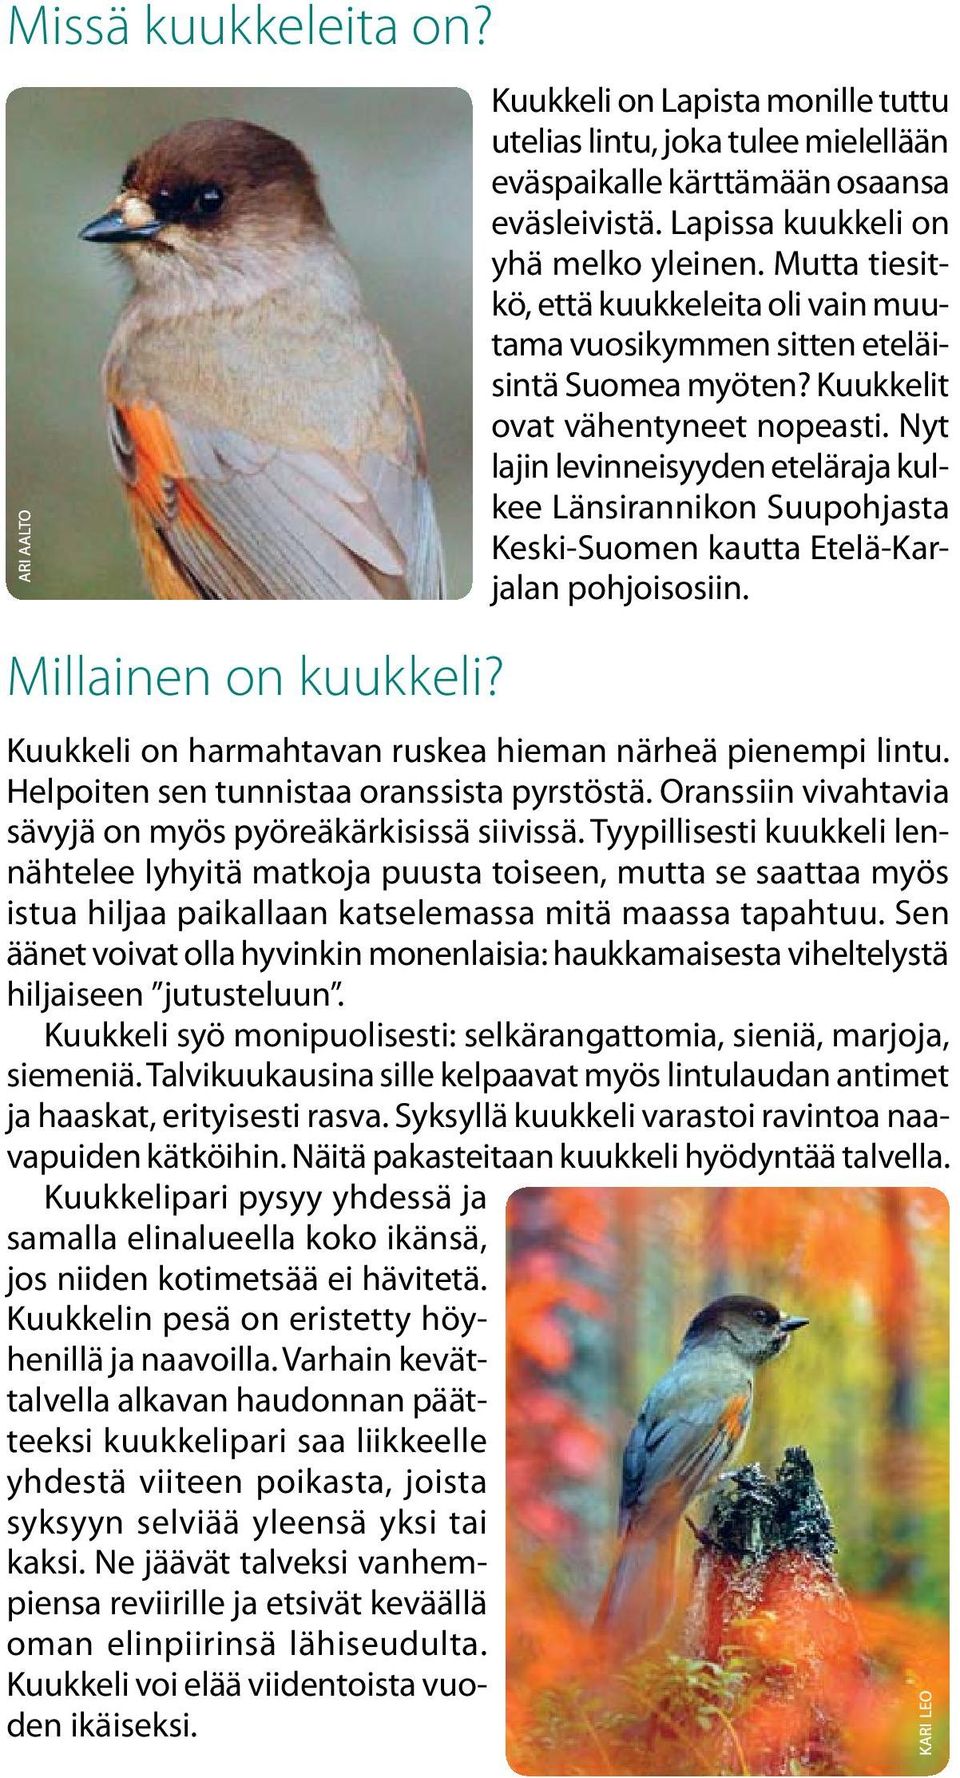 Nyt lajin levinneisyyden eteläraja kulkee Länsirannikon Suupohjasta Keski-Suomen kautta Etelä-Karjalan pohjoisosiin. Kuukkeli on harmahtavan ruskea hieman närheä pienempi lintu.